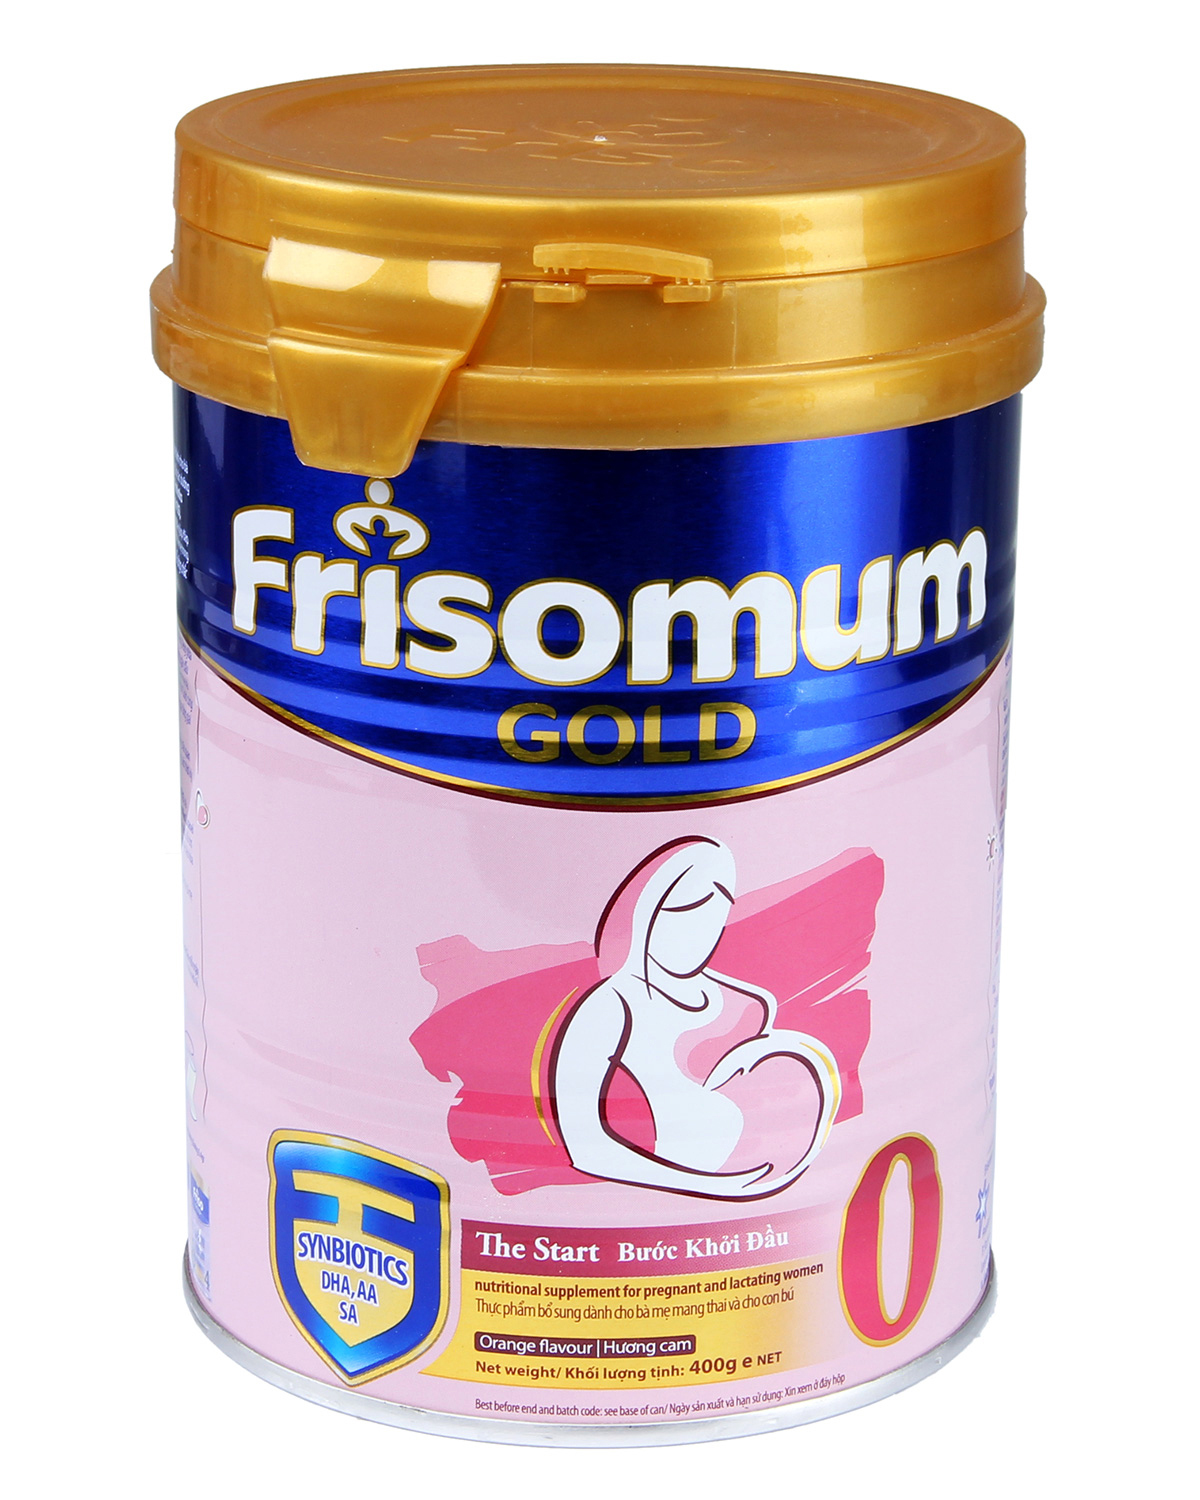 Sữa Frisolac Gold 1 Và Optimum Gold 1: Nơi bán giá rẻ, uy tín, chất lượng nhất | Websosanh